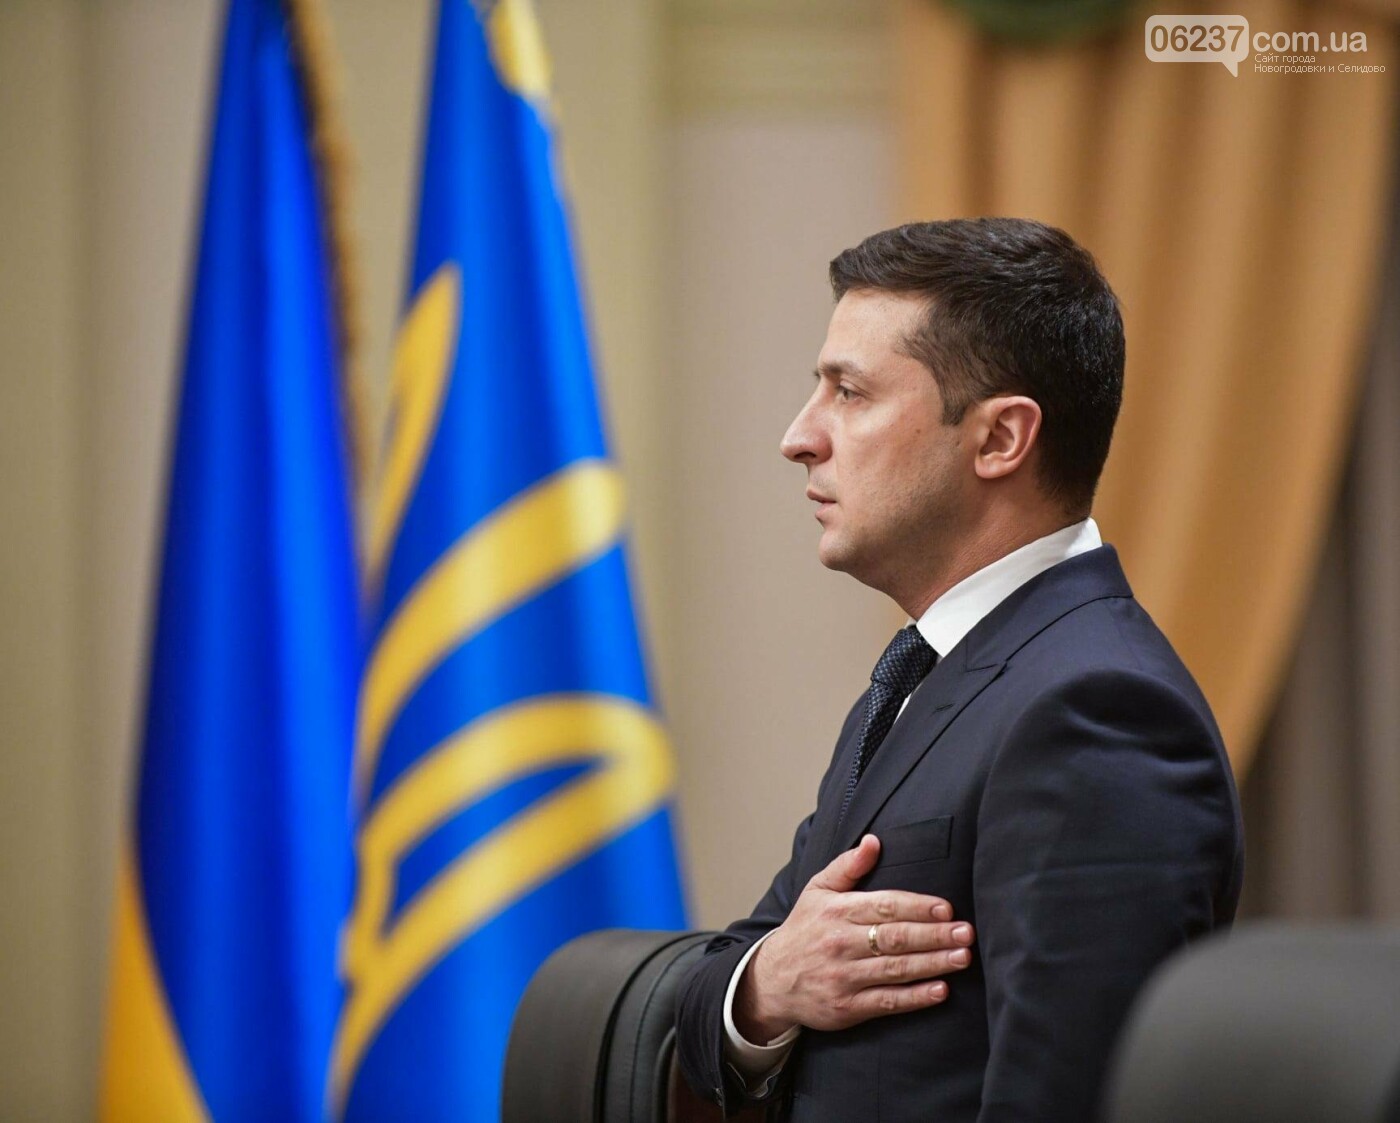 Зеленский потребовал полноправное членство Украины в ЕС, фото-1